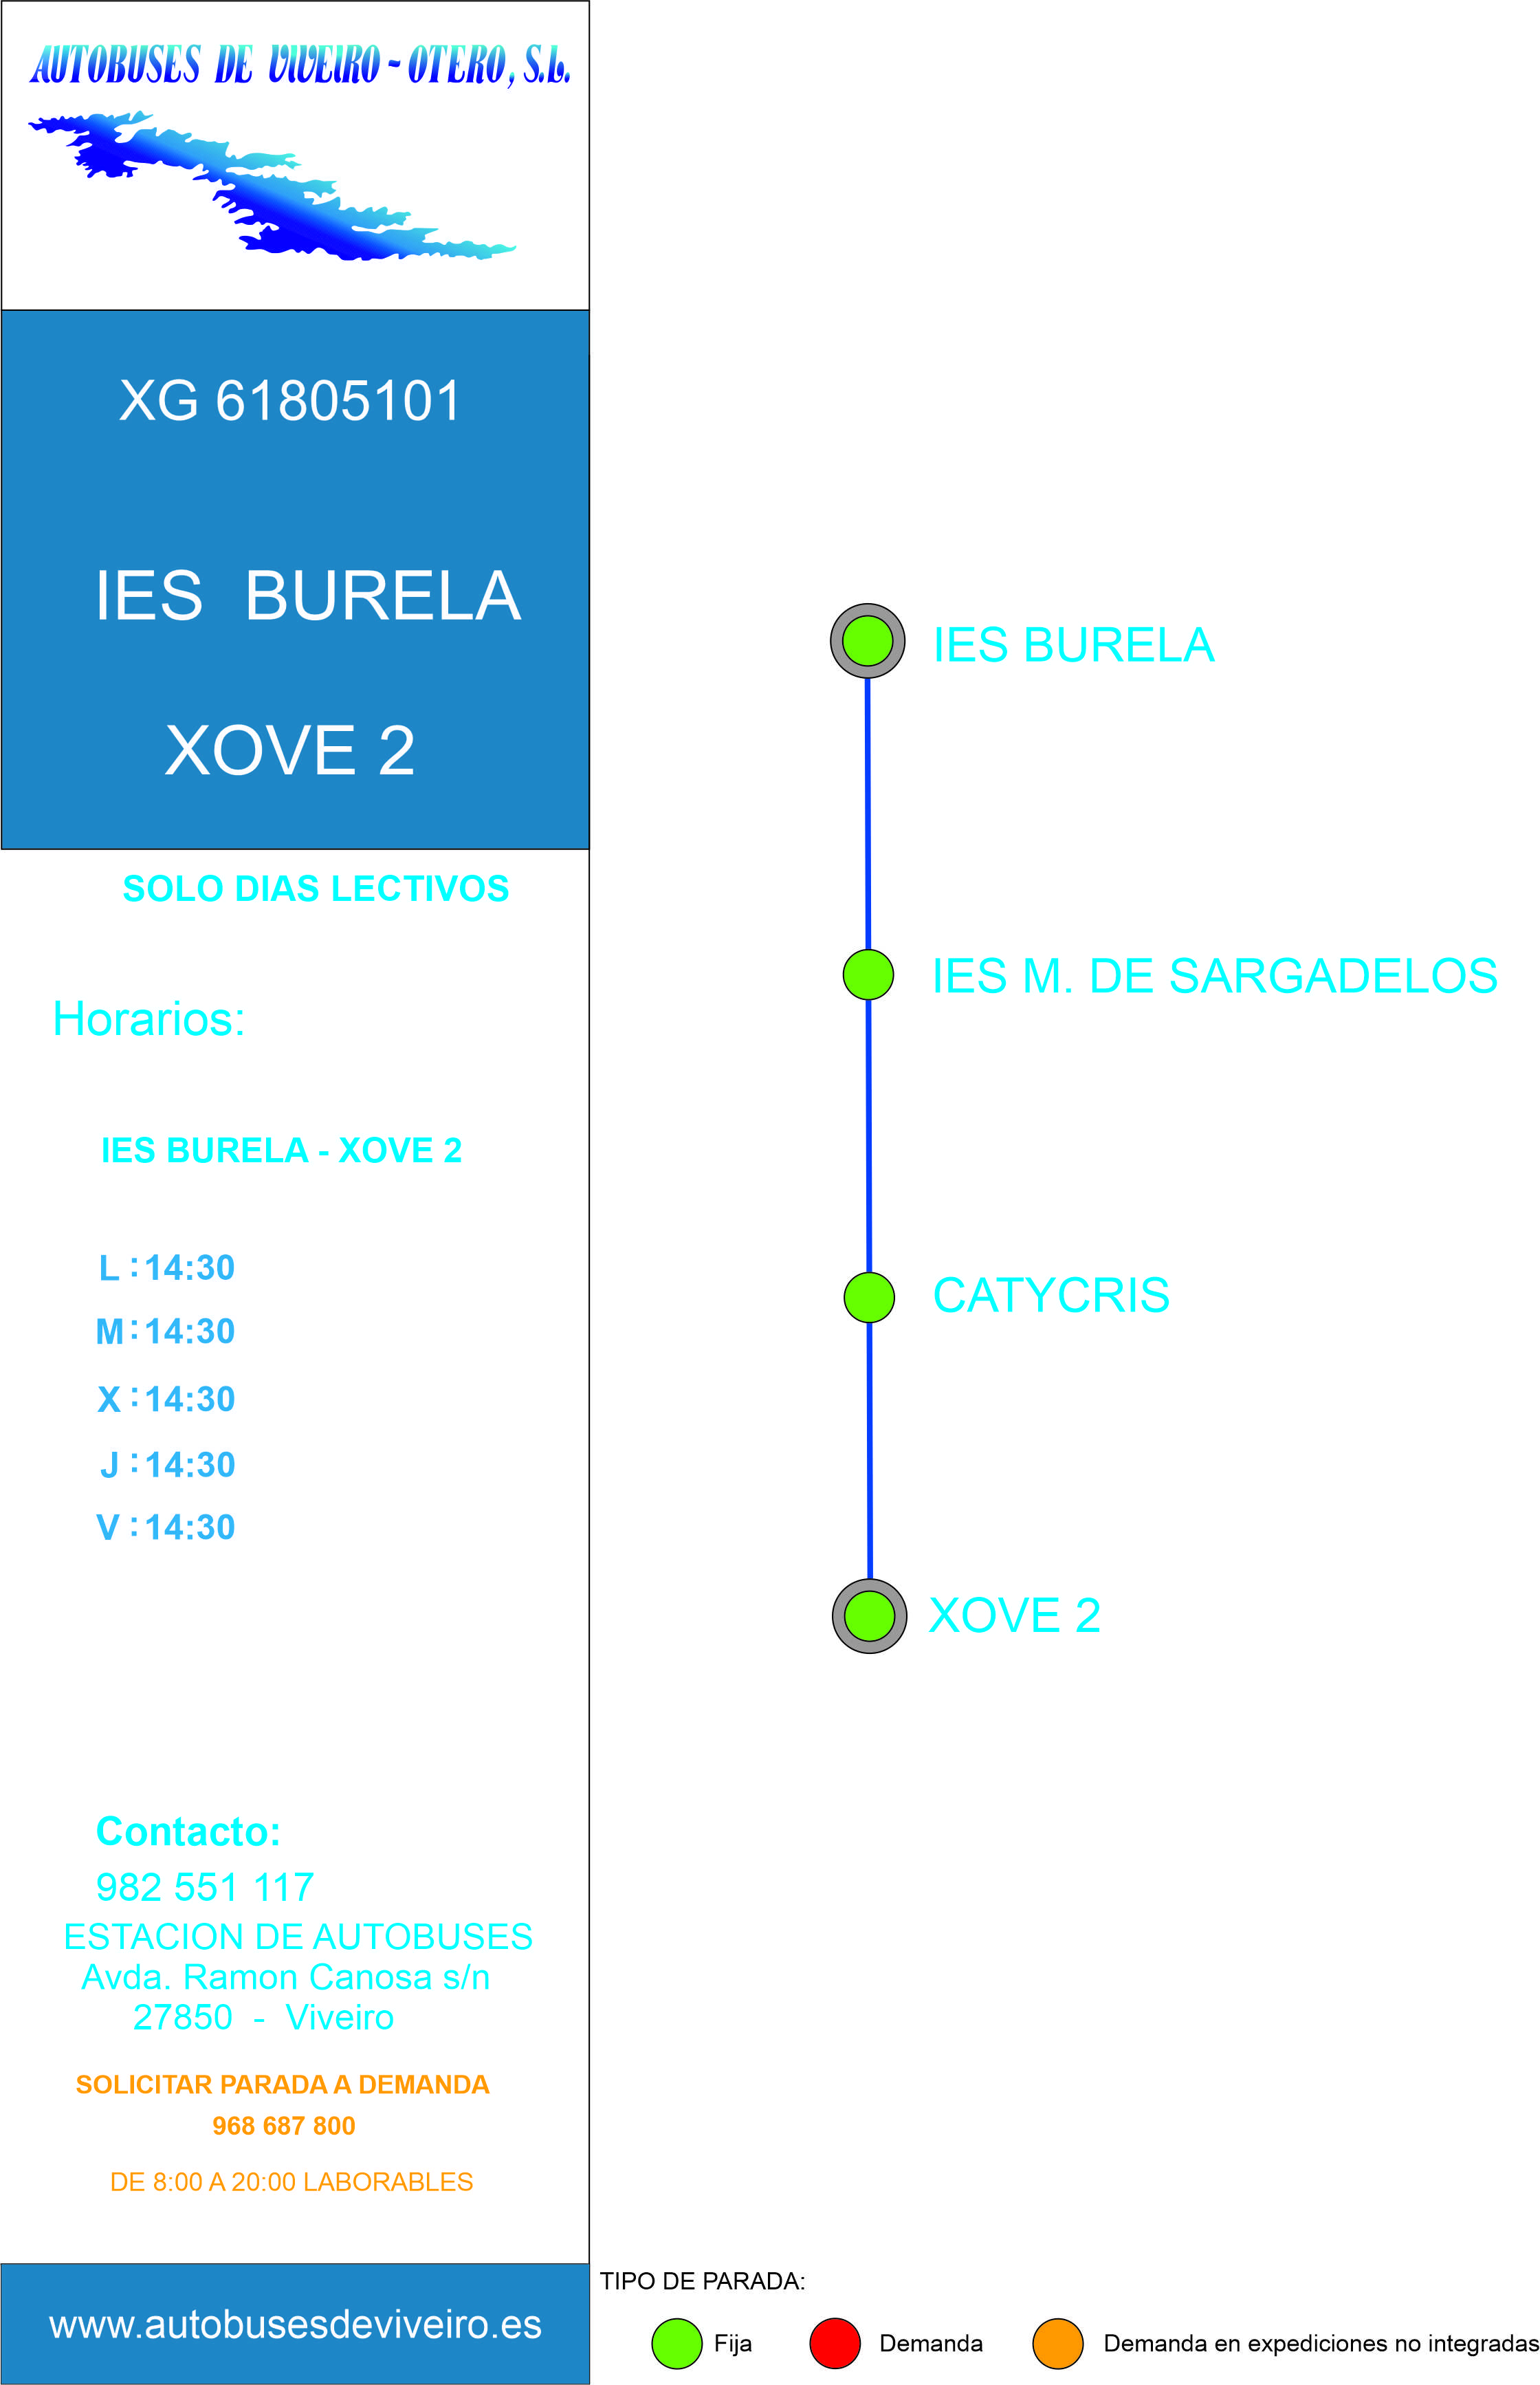 Xg61805101 Ies Burela   Xove 2